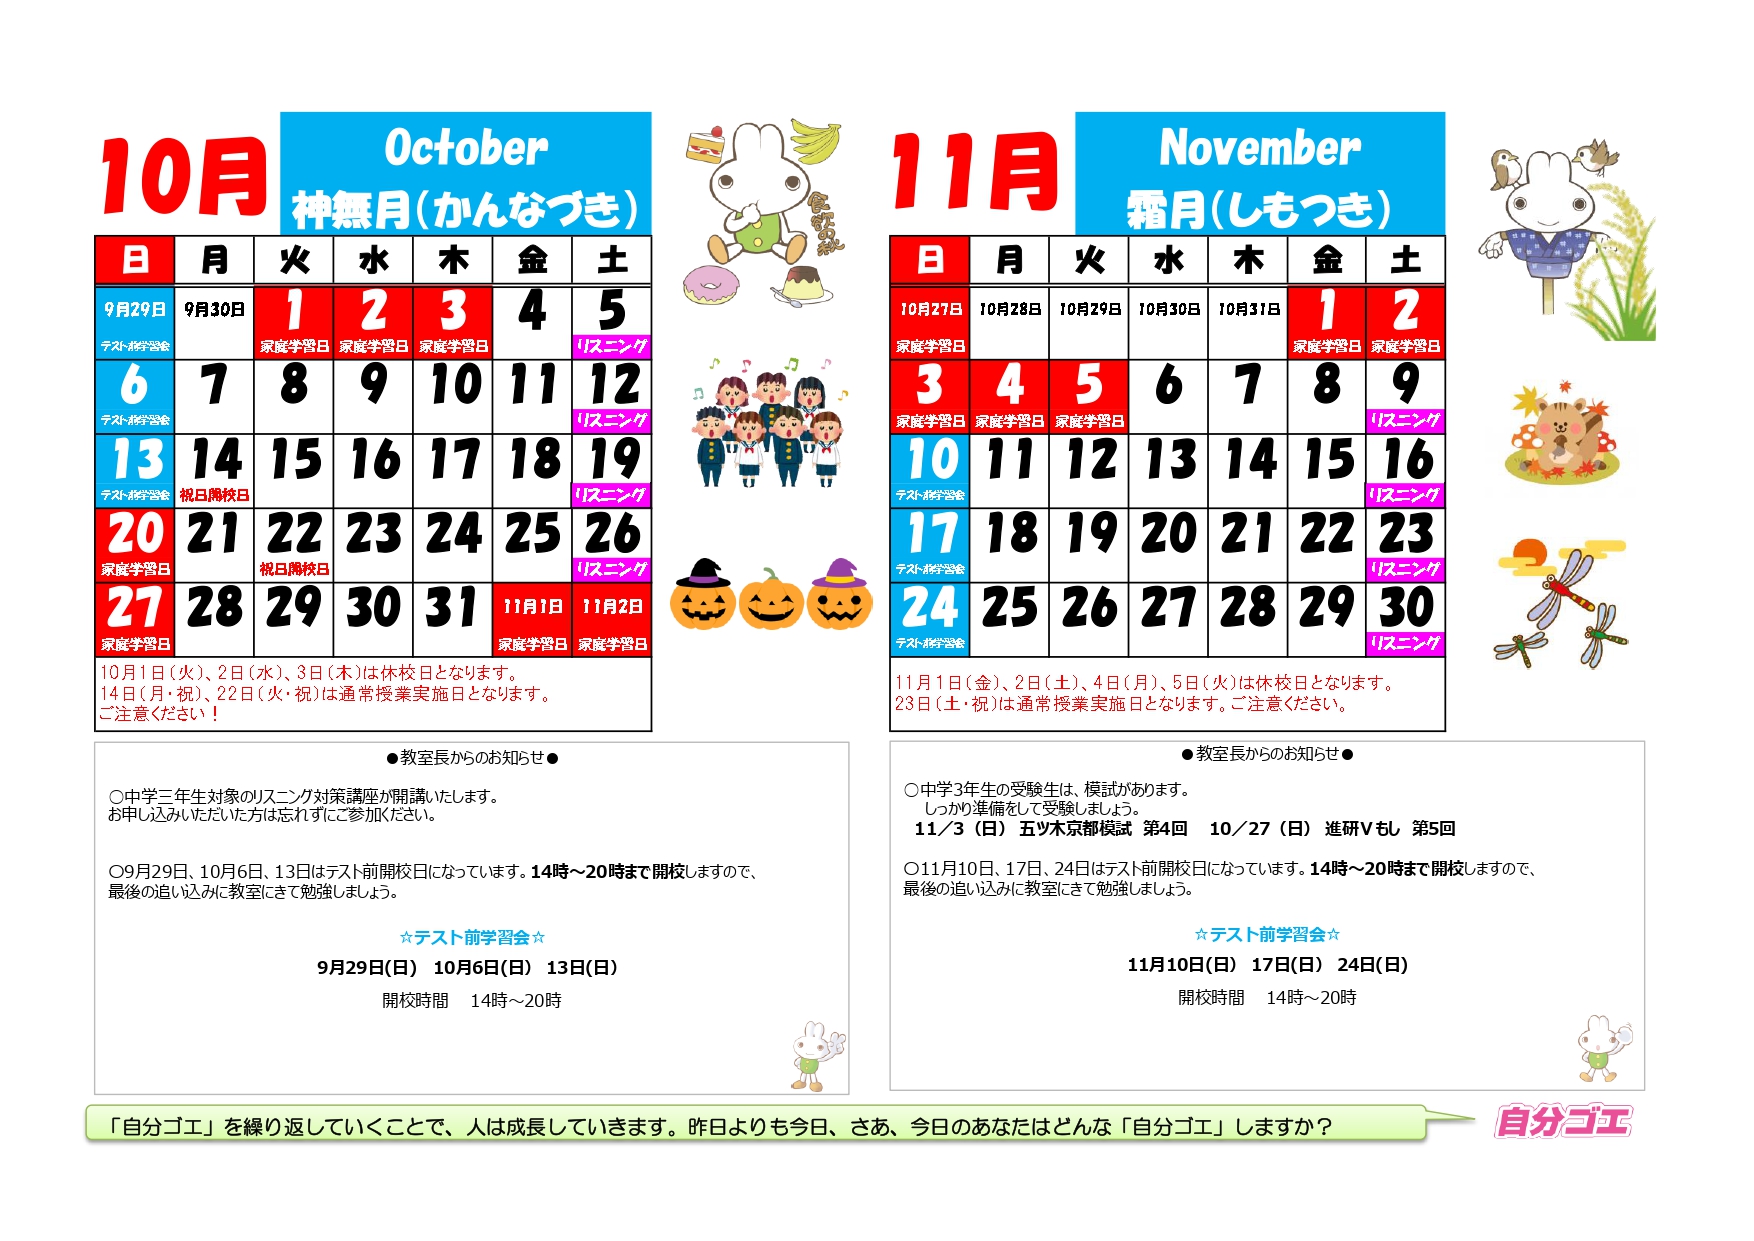 【2019年度】ブースカレンダー2019年10月11月(よこ）_pages-to-jpg-0001.jpg